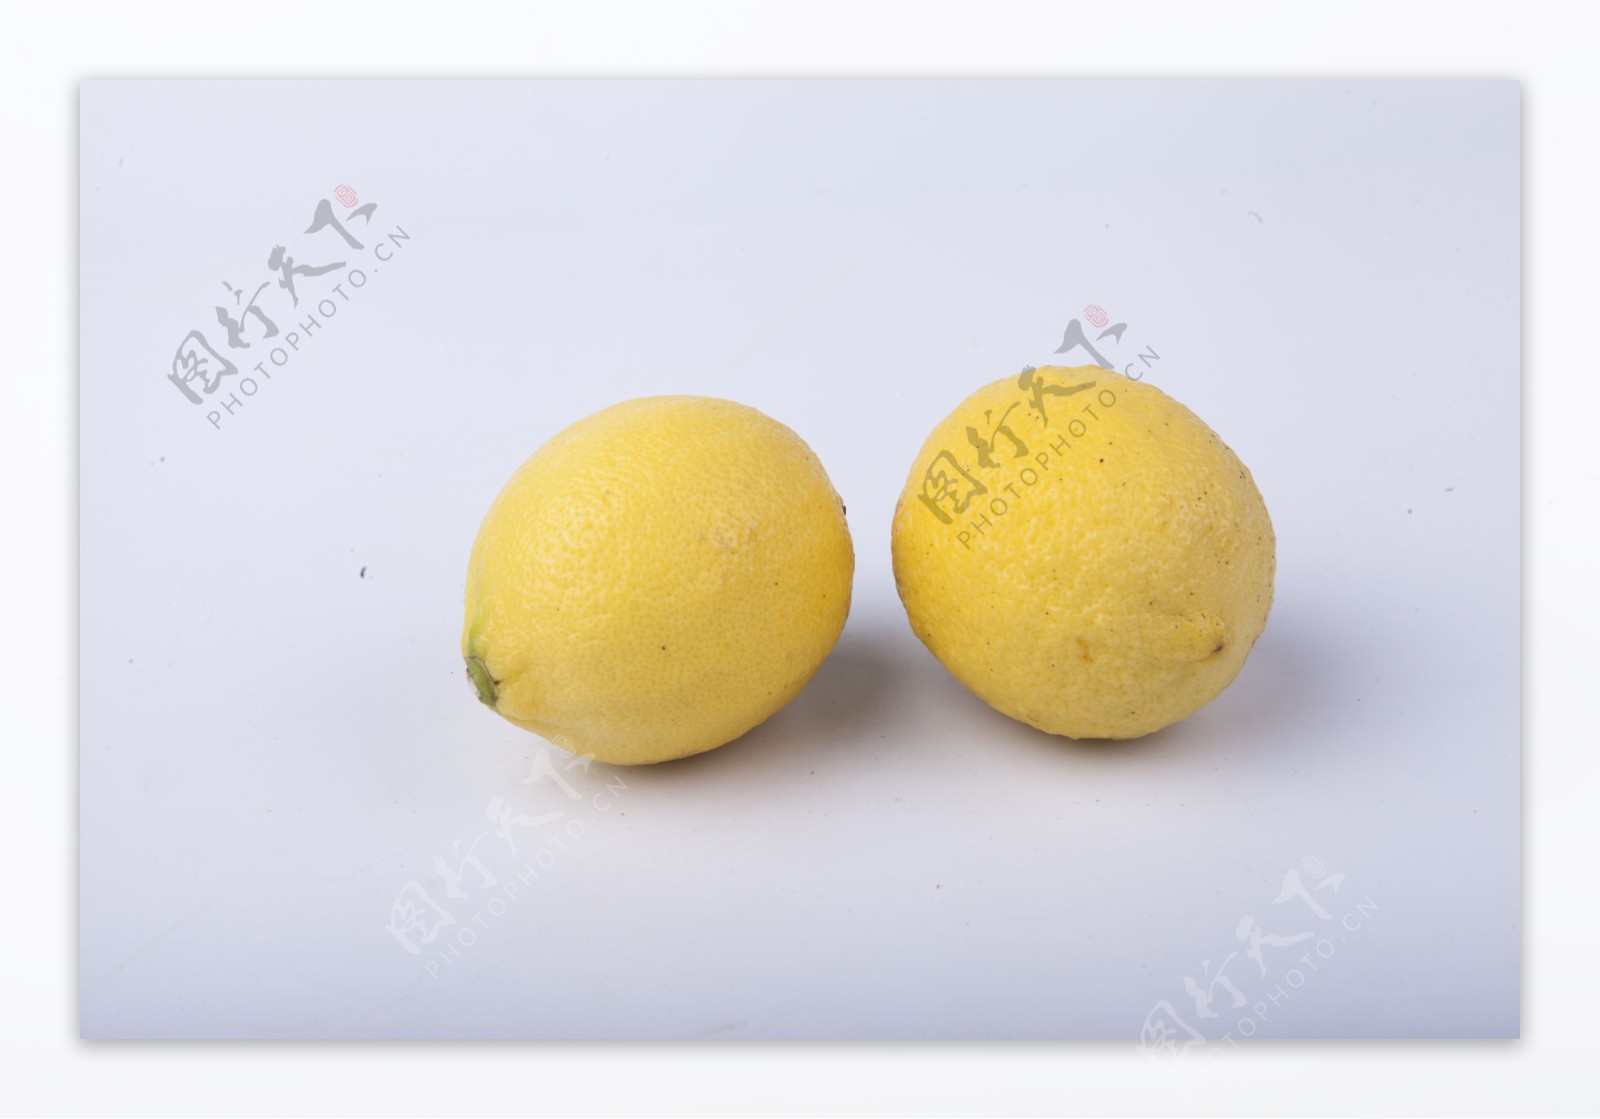 生活常见水果之柠檬2